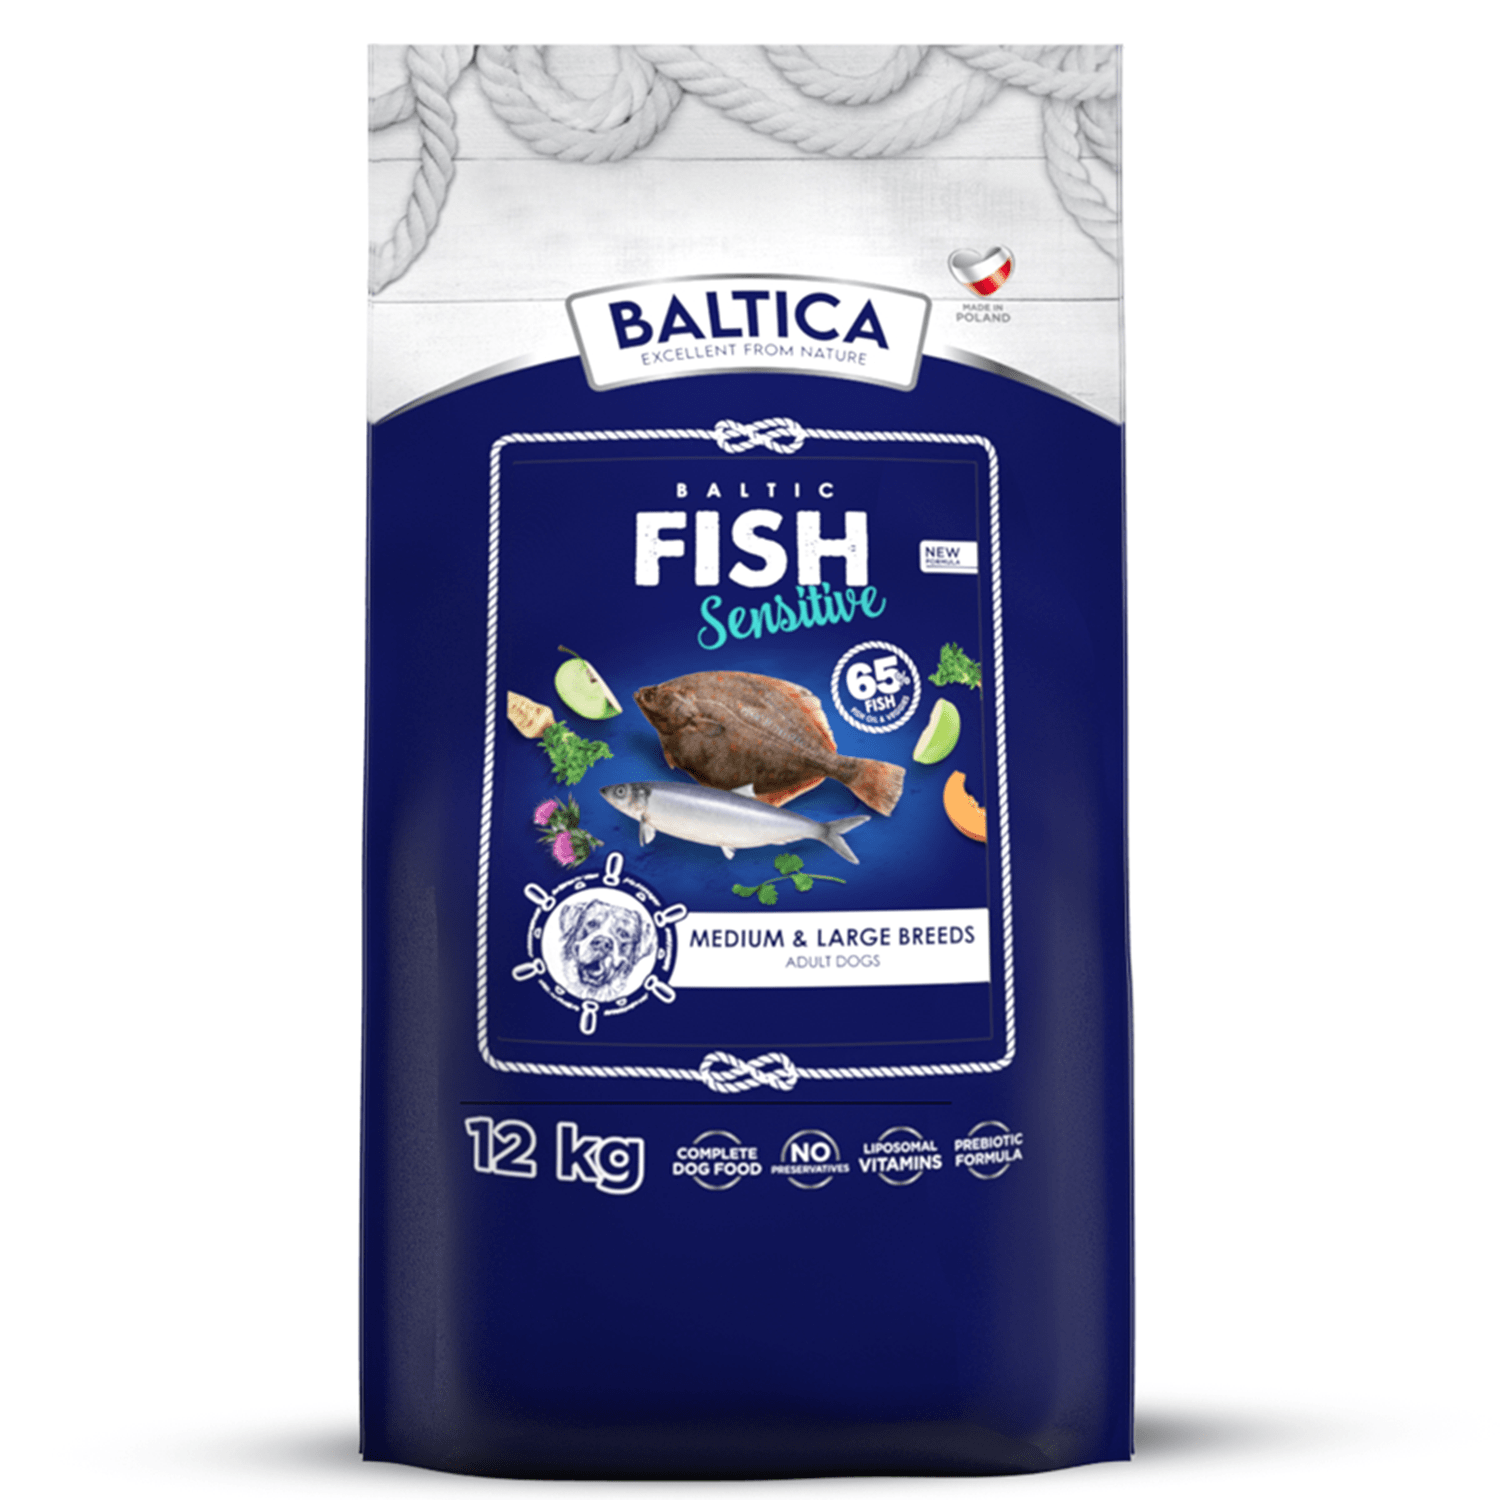 BALTICA Baltic Fish Sensitive 12kg